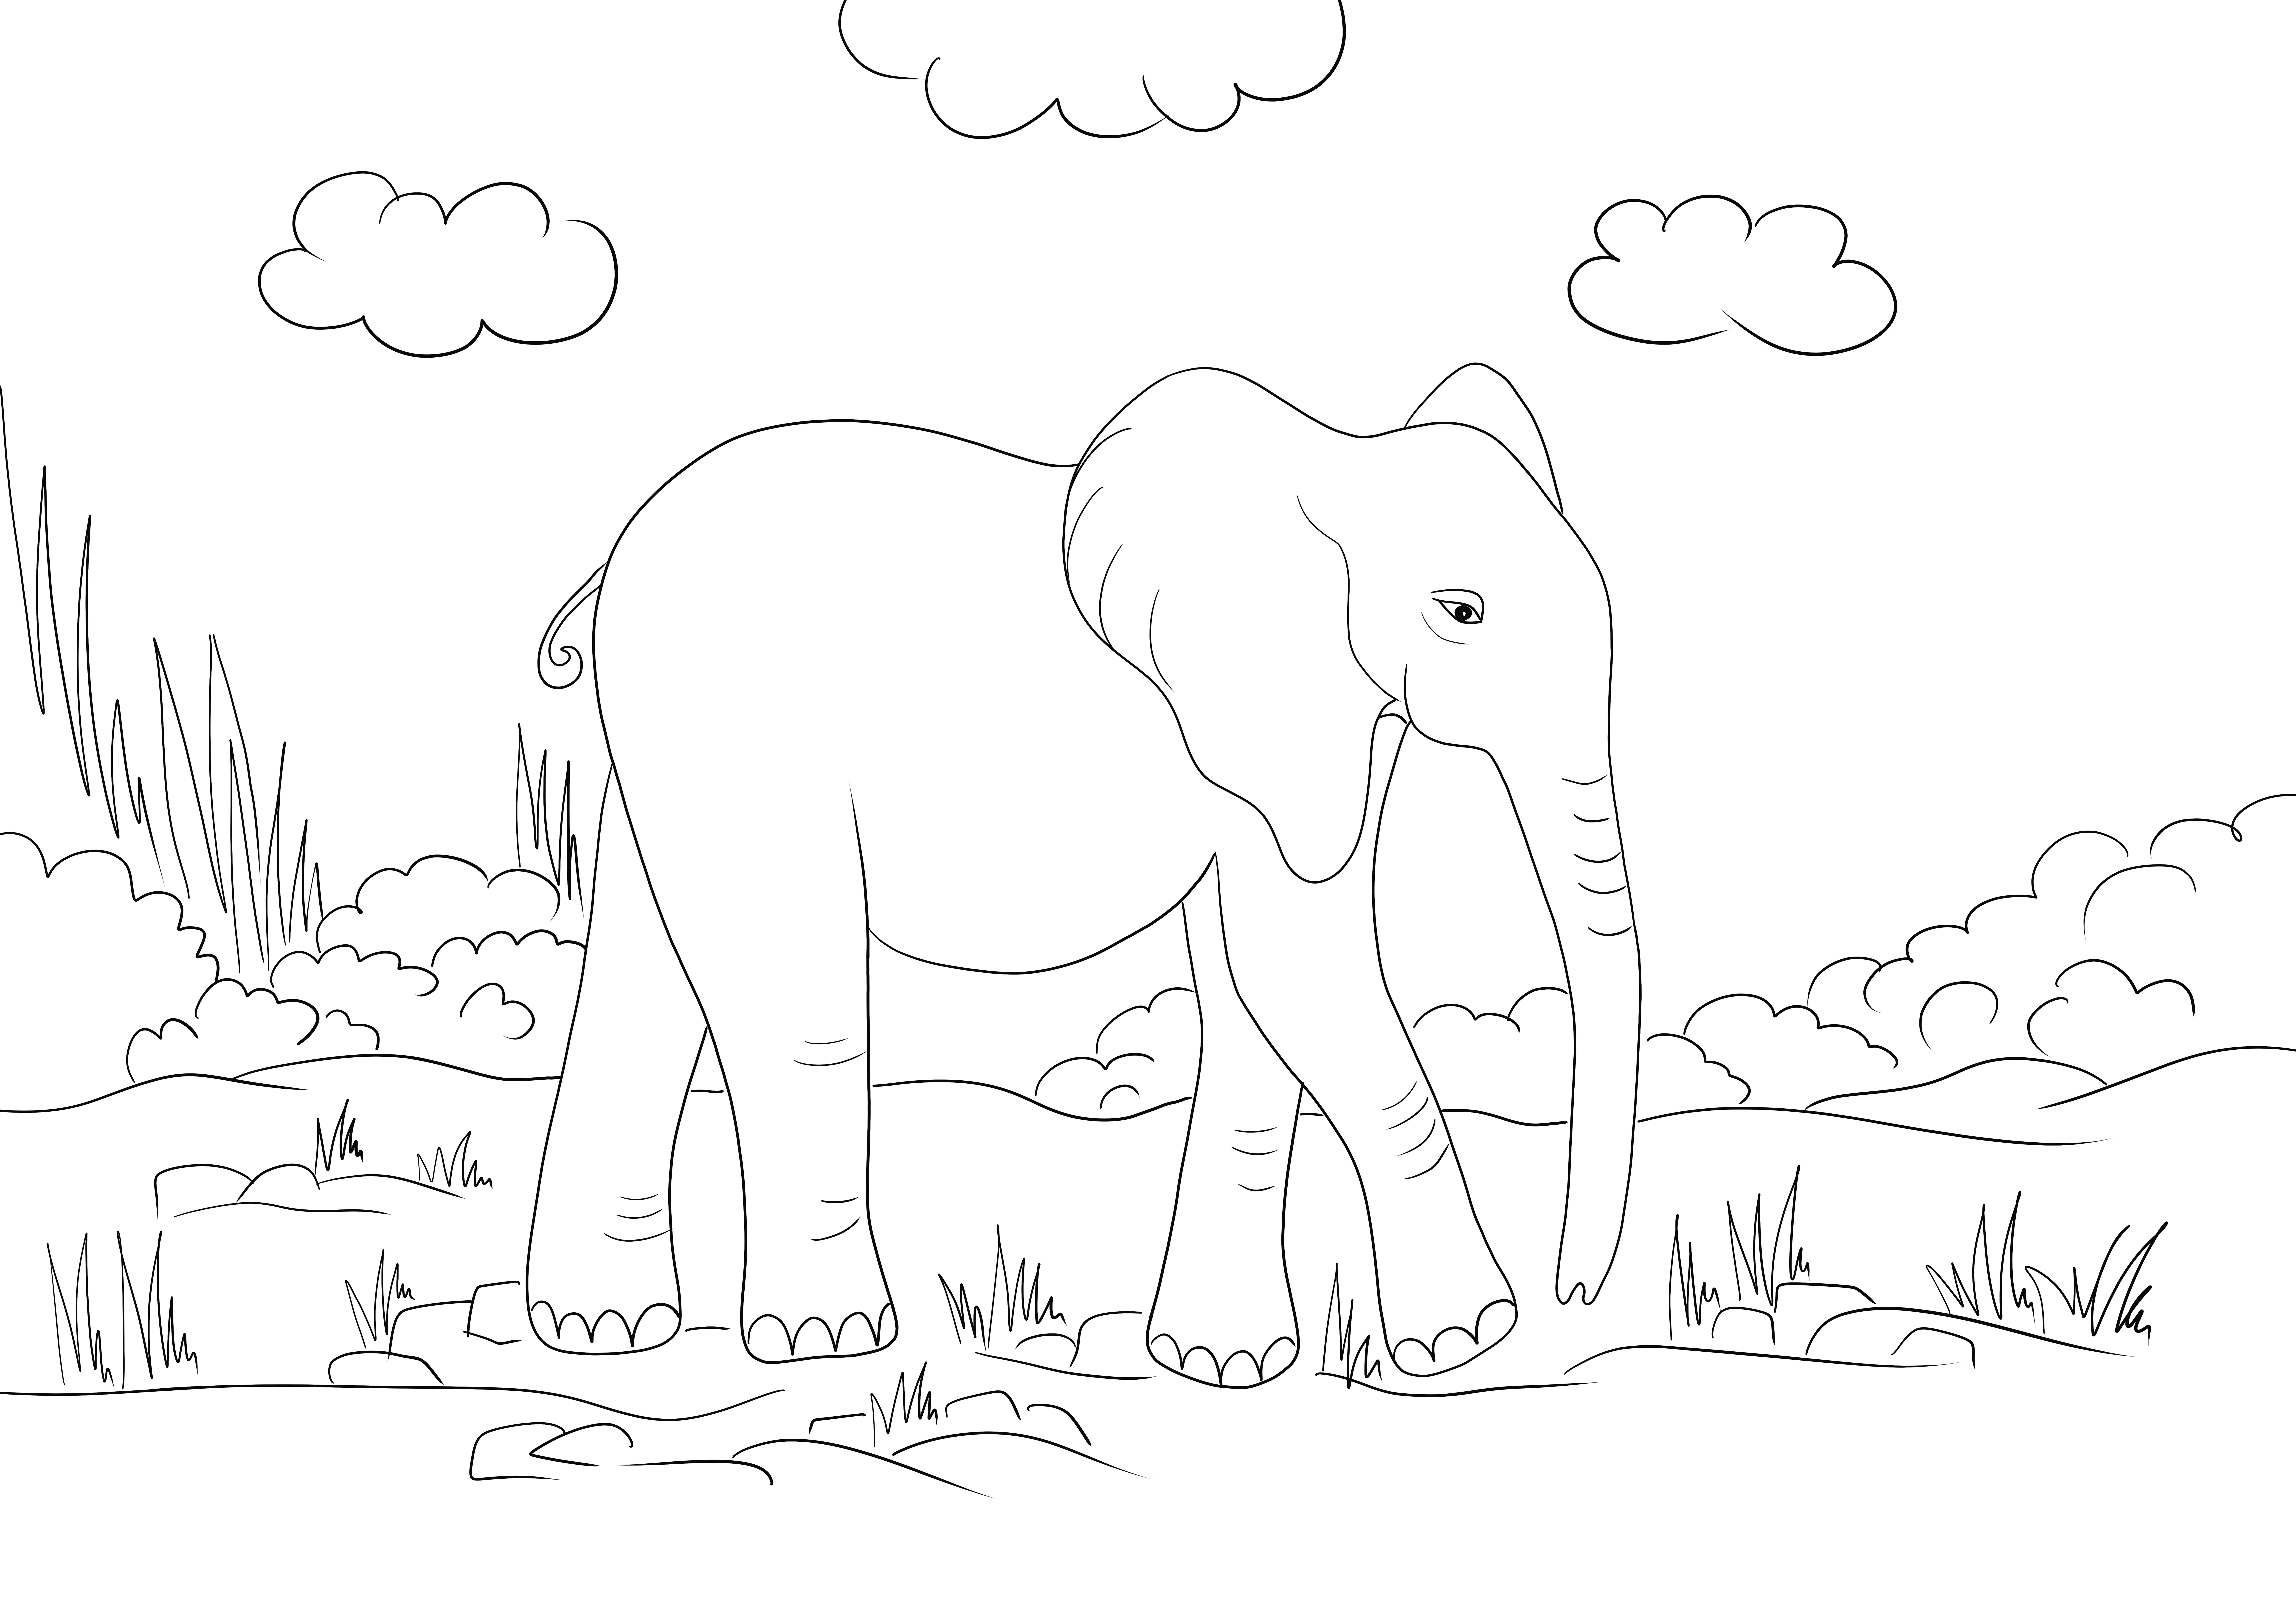 O imagine de colorat drăguț elefant pentru a descărca sau imprima gratuit